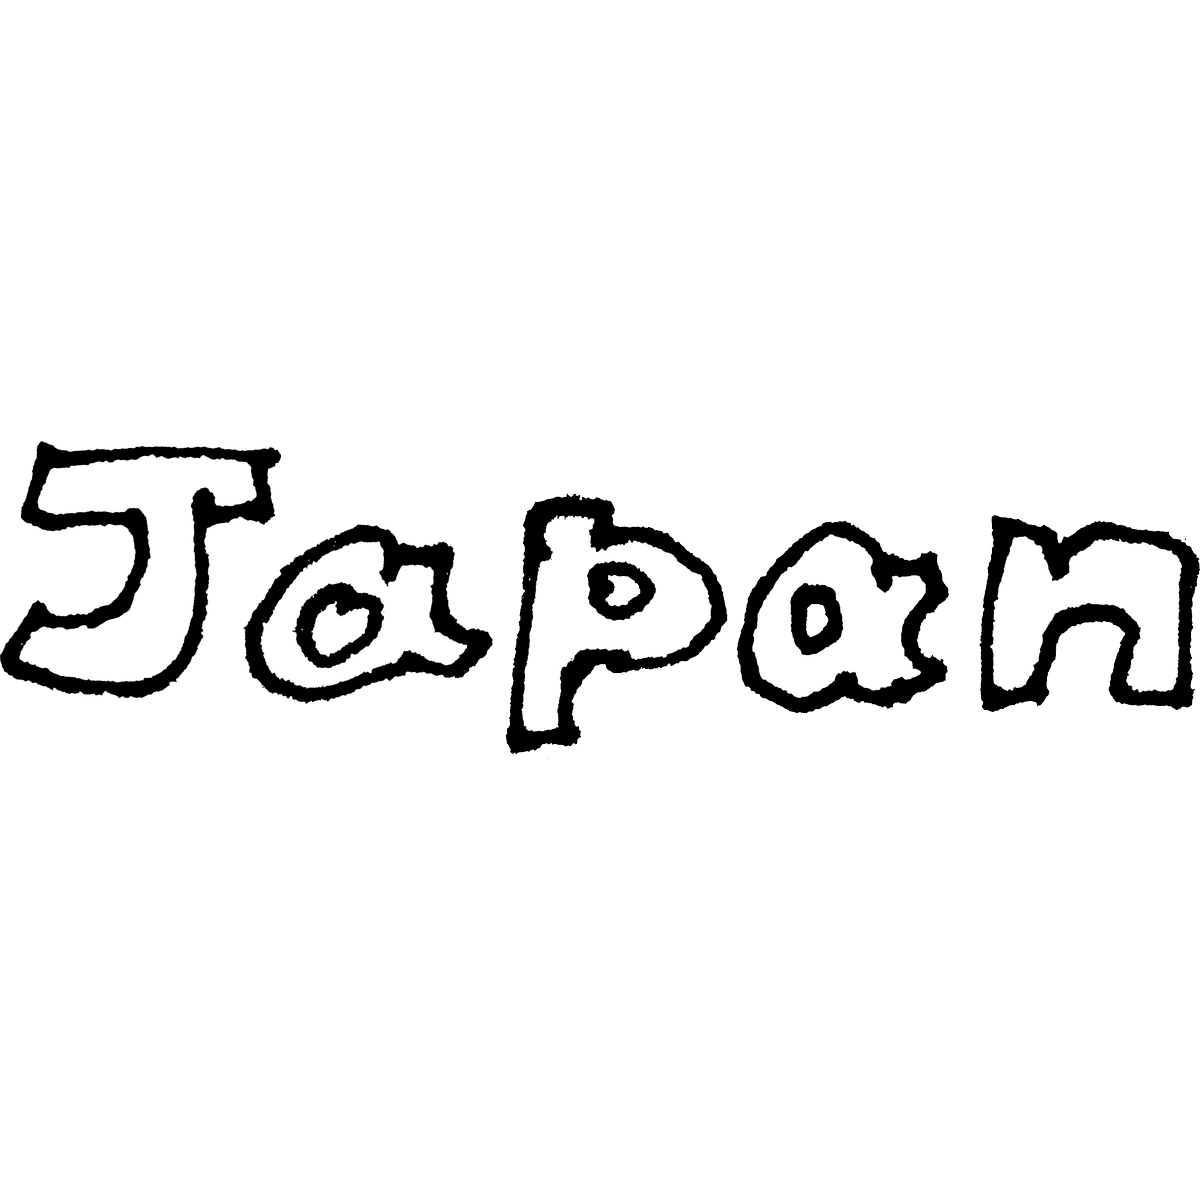 「Japan」袋文字のイラスト 